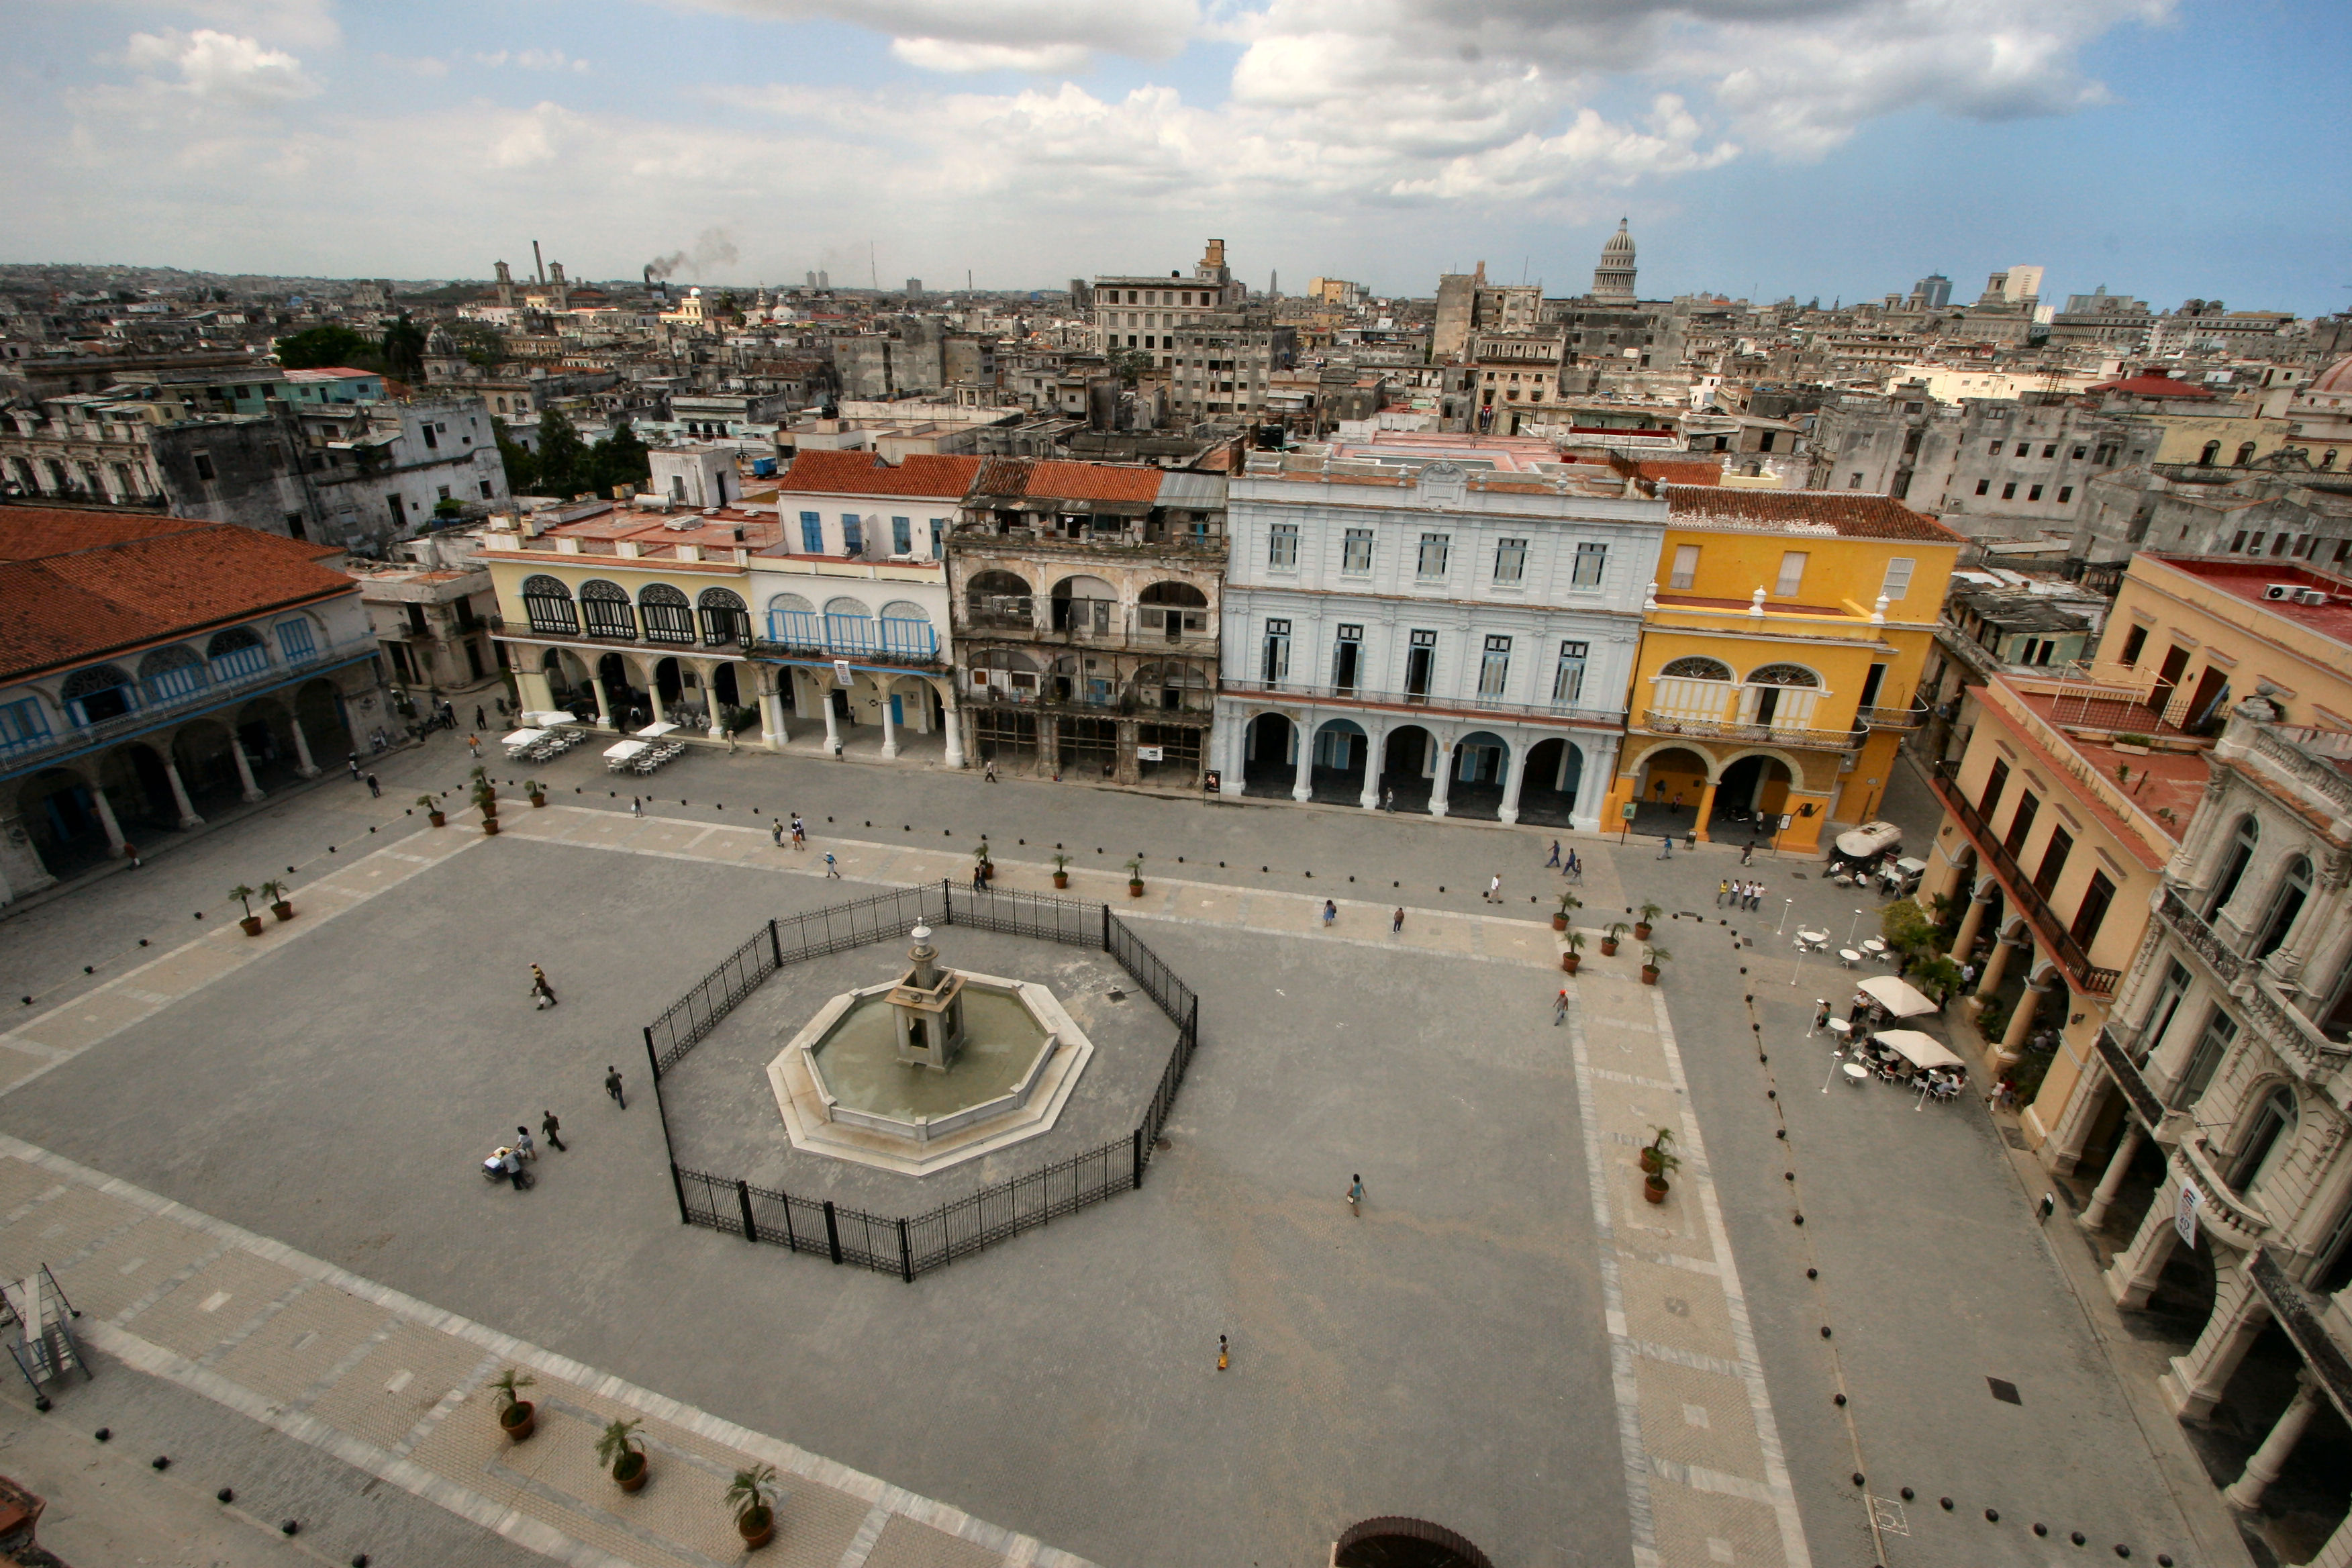 File:Old Square, Havana.jpg - Wikimedia Commons